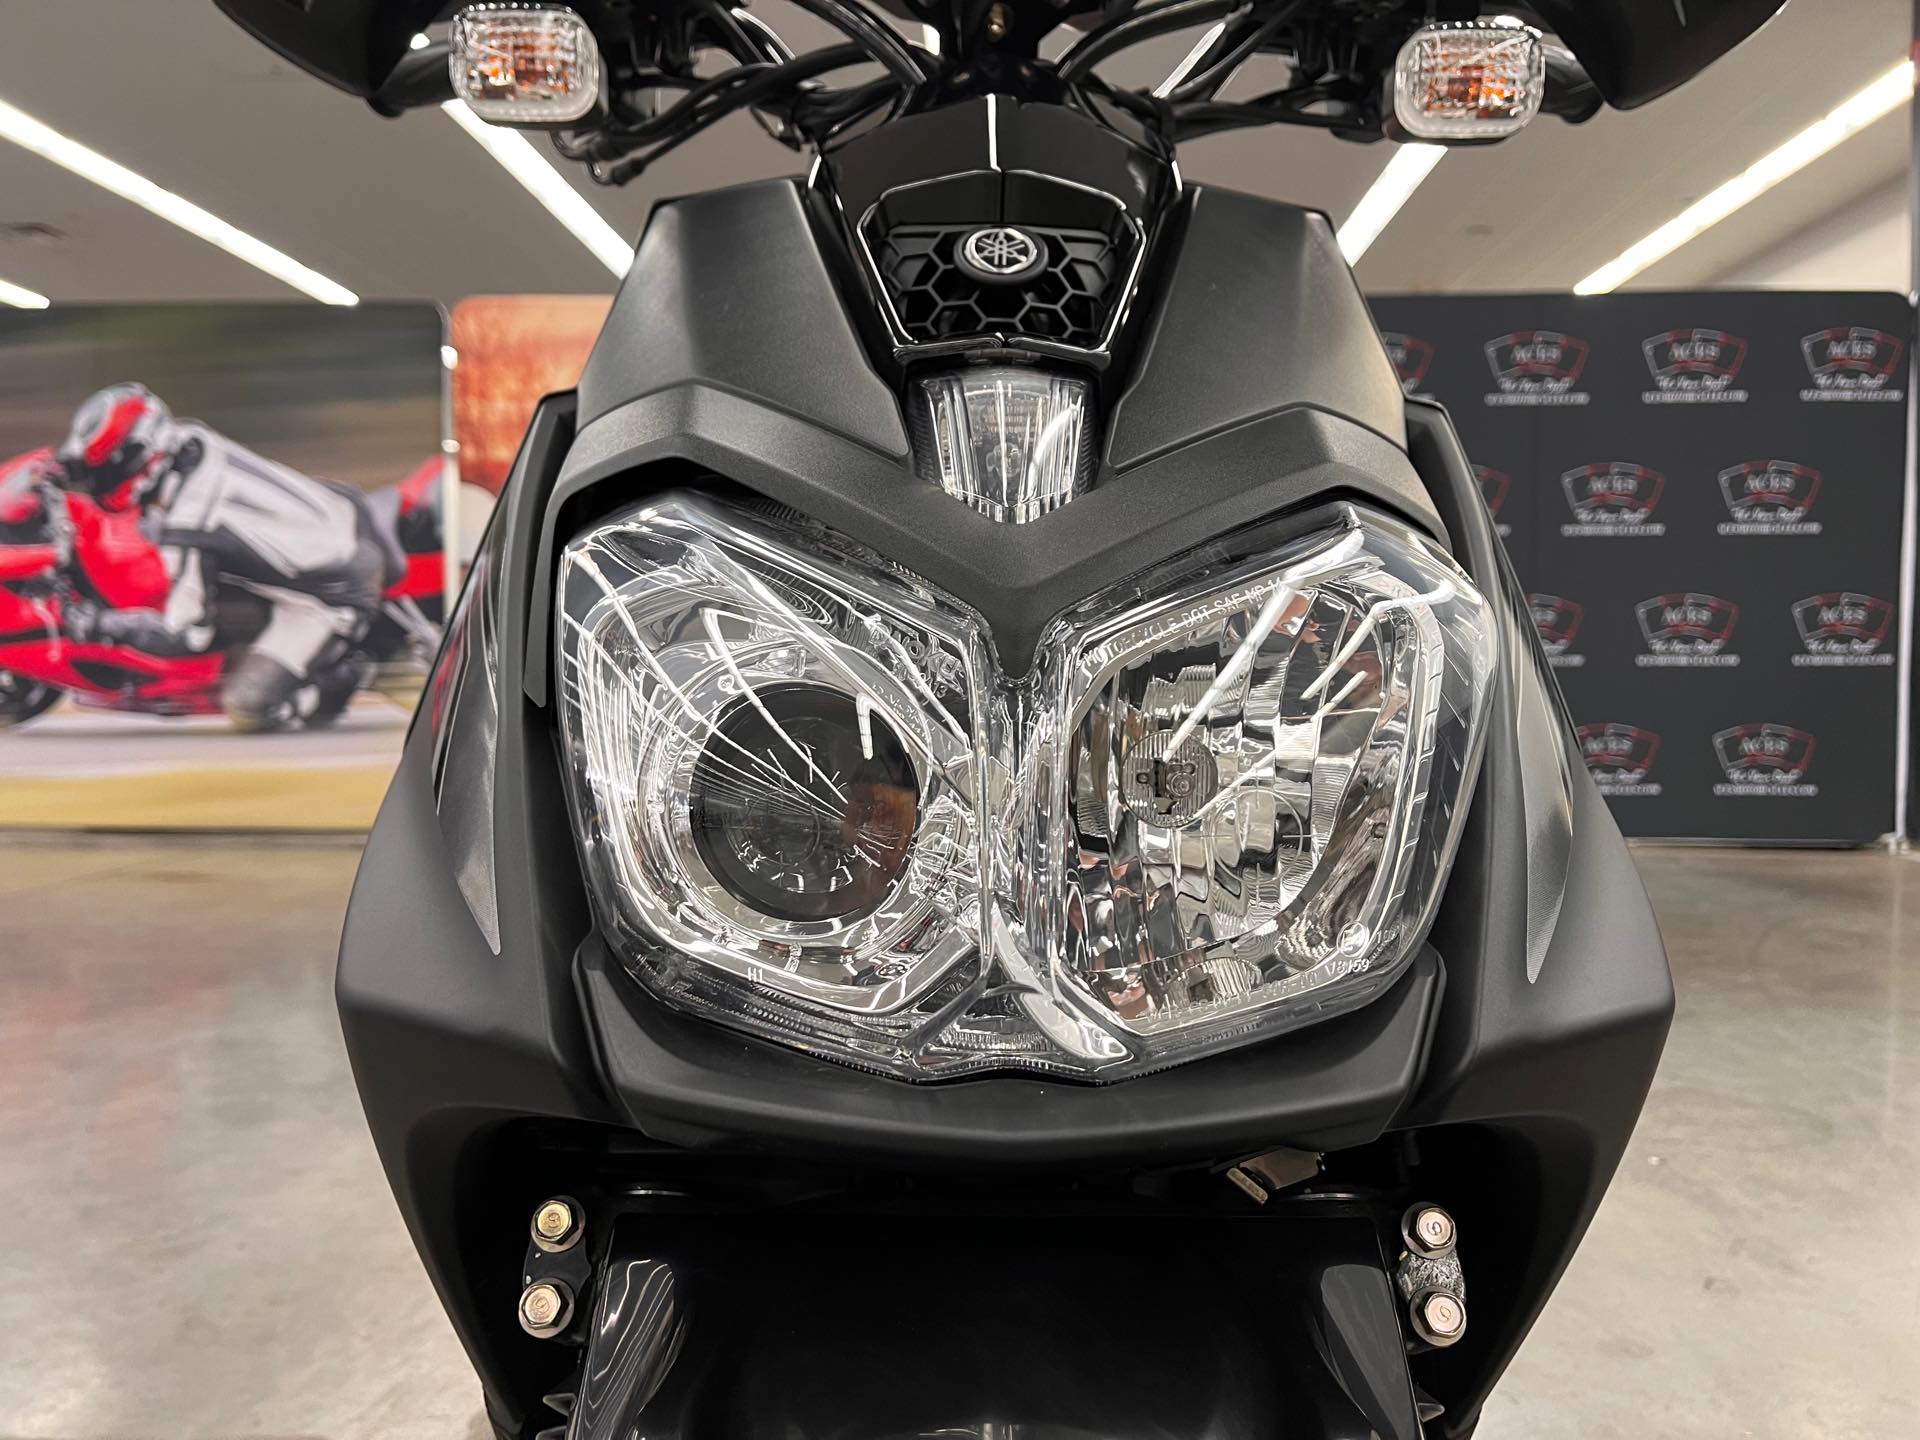 2021 Yamaha Zuma 125 at Aces Motorcycles - Denver